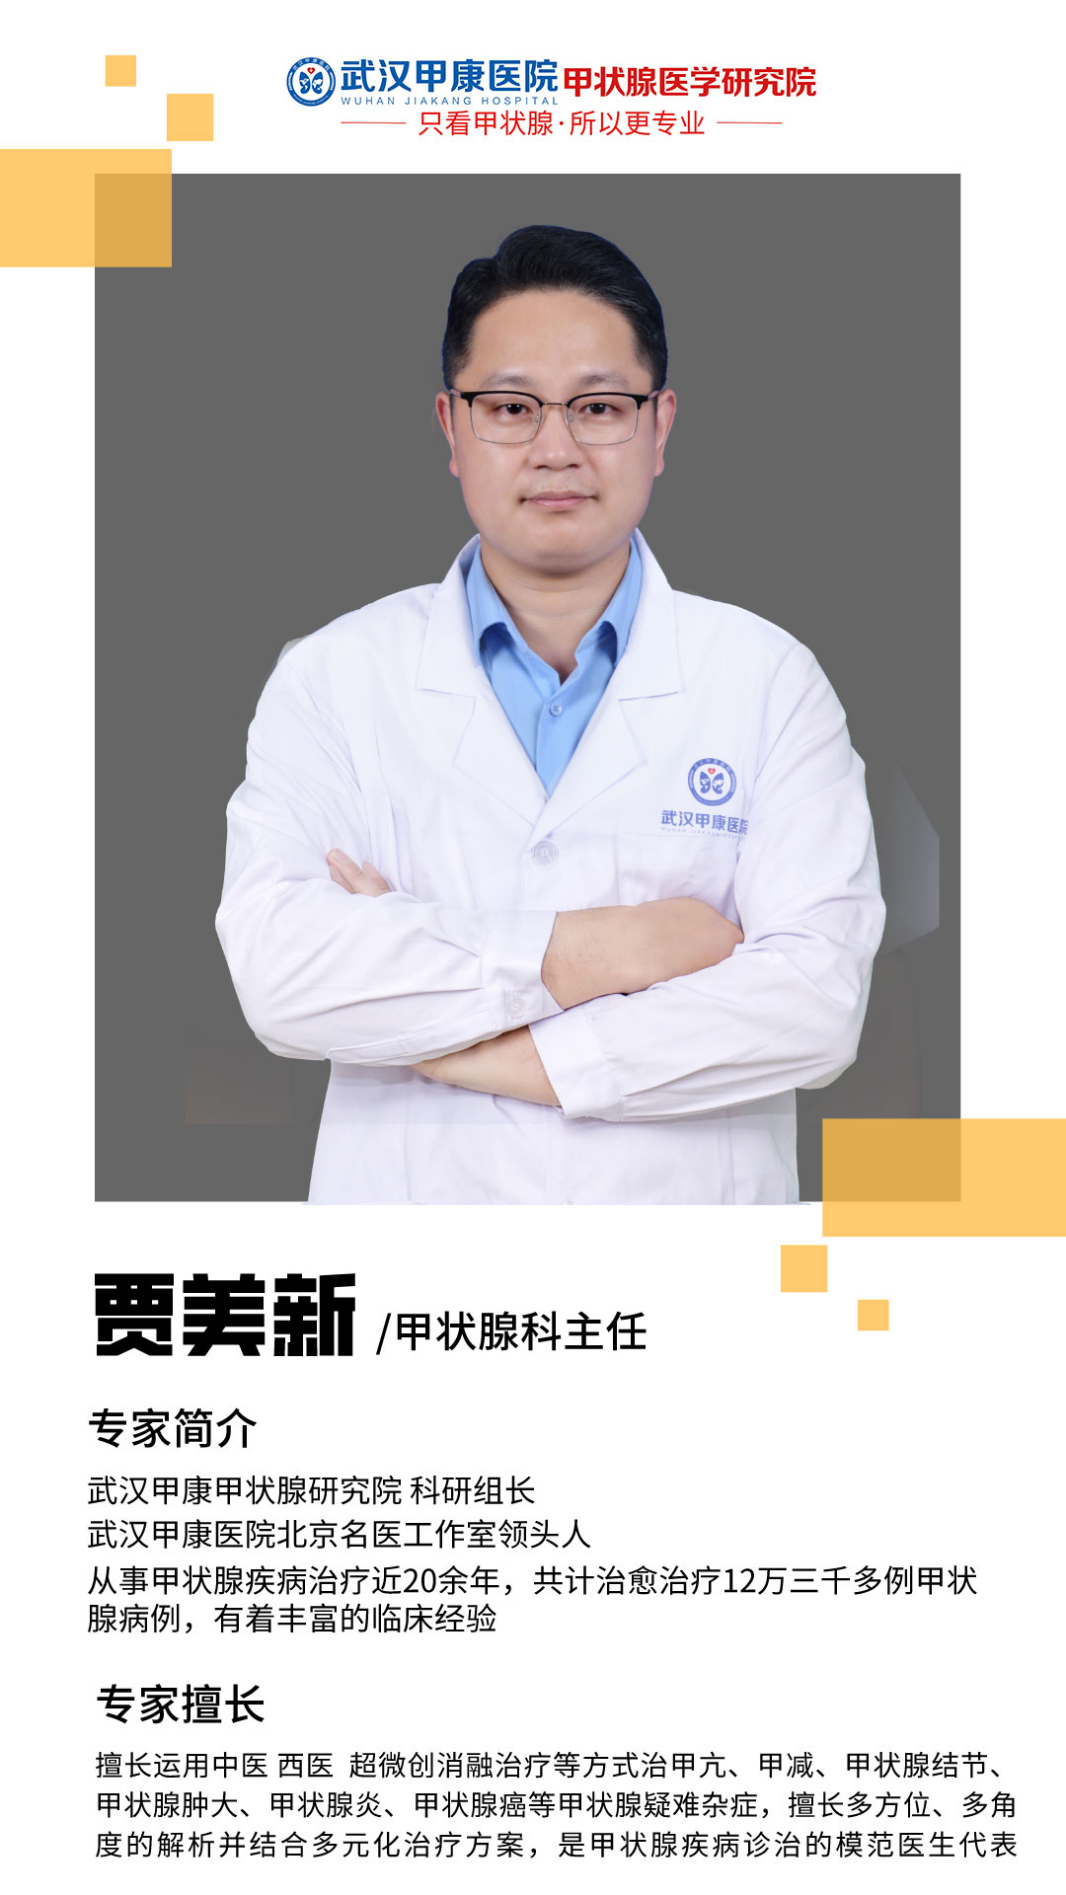 甲状腺微波消融专家贾美新-甲状腺疾病诊治模范医生代表